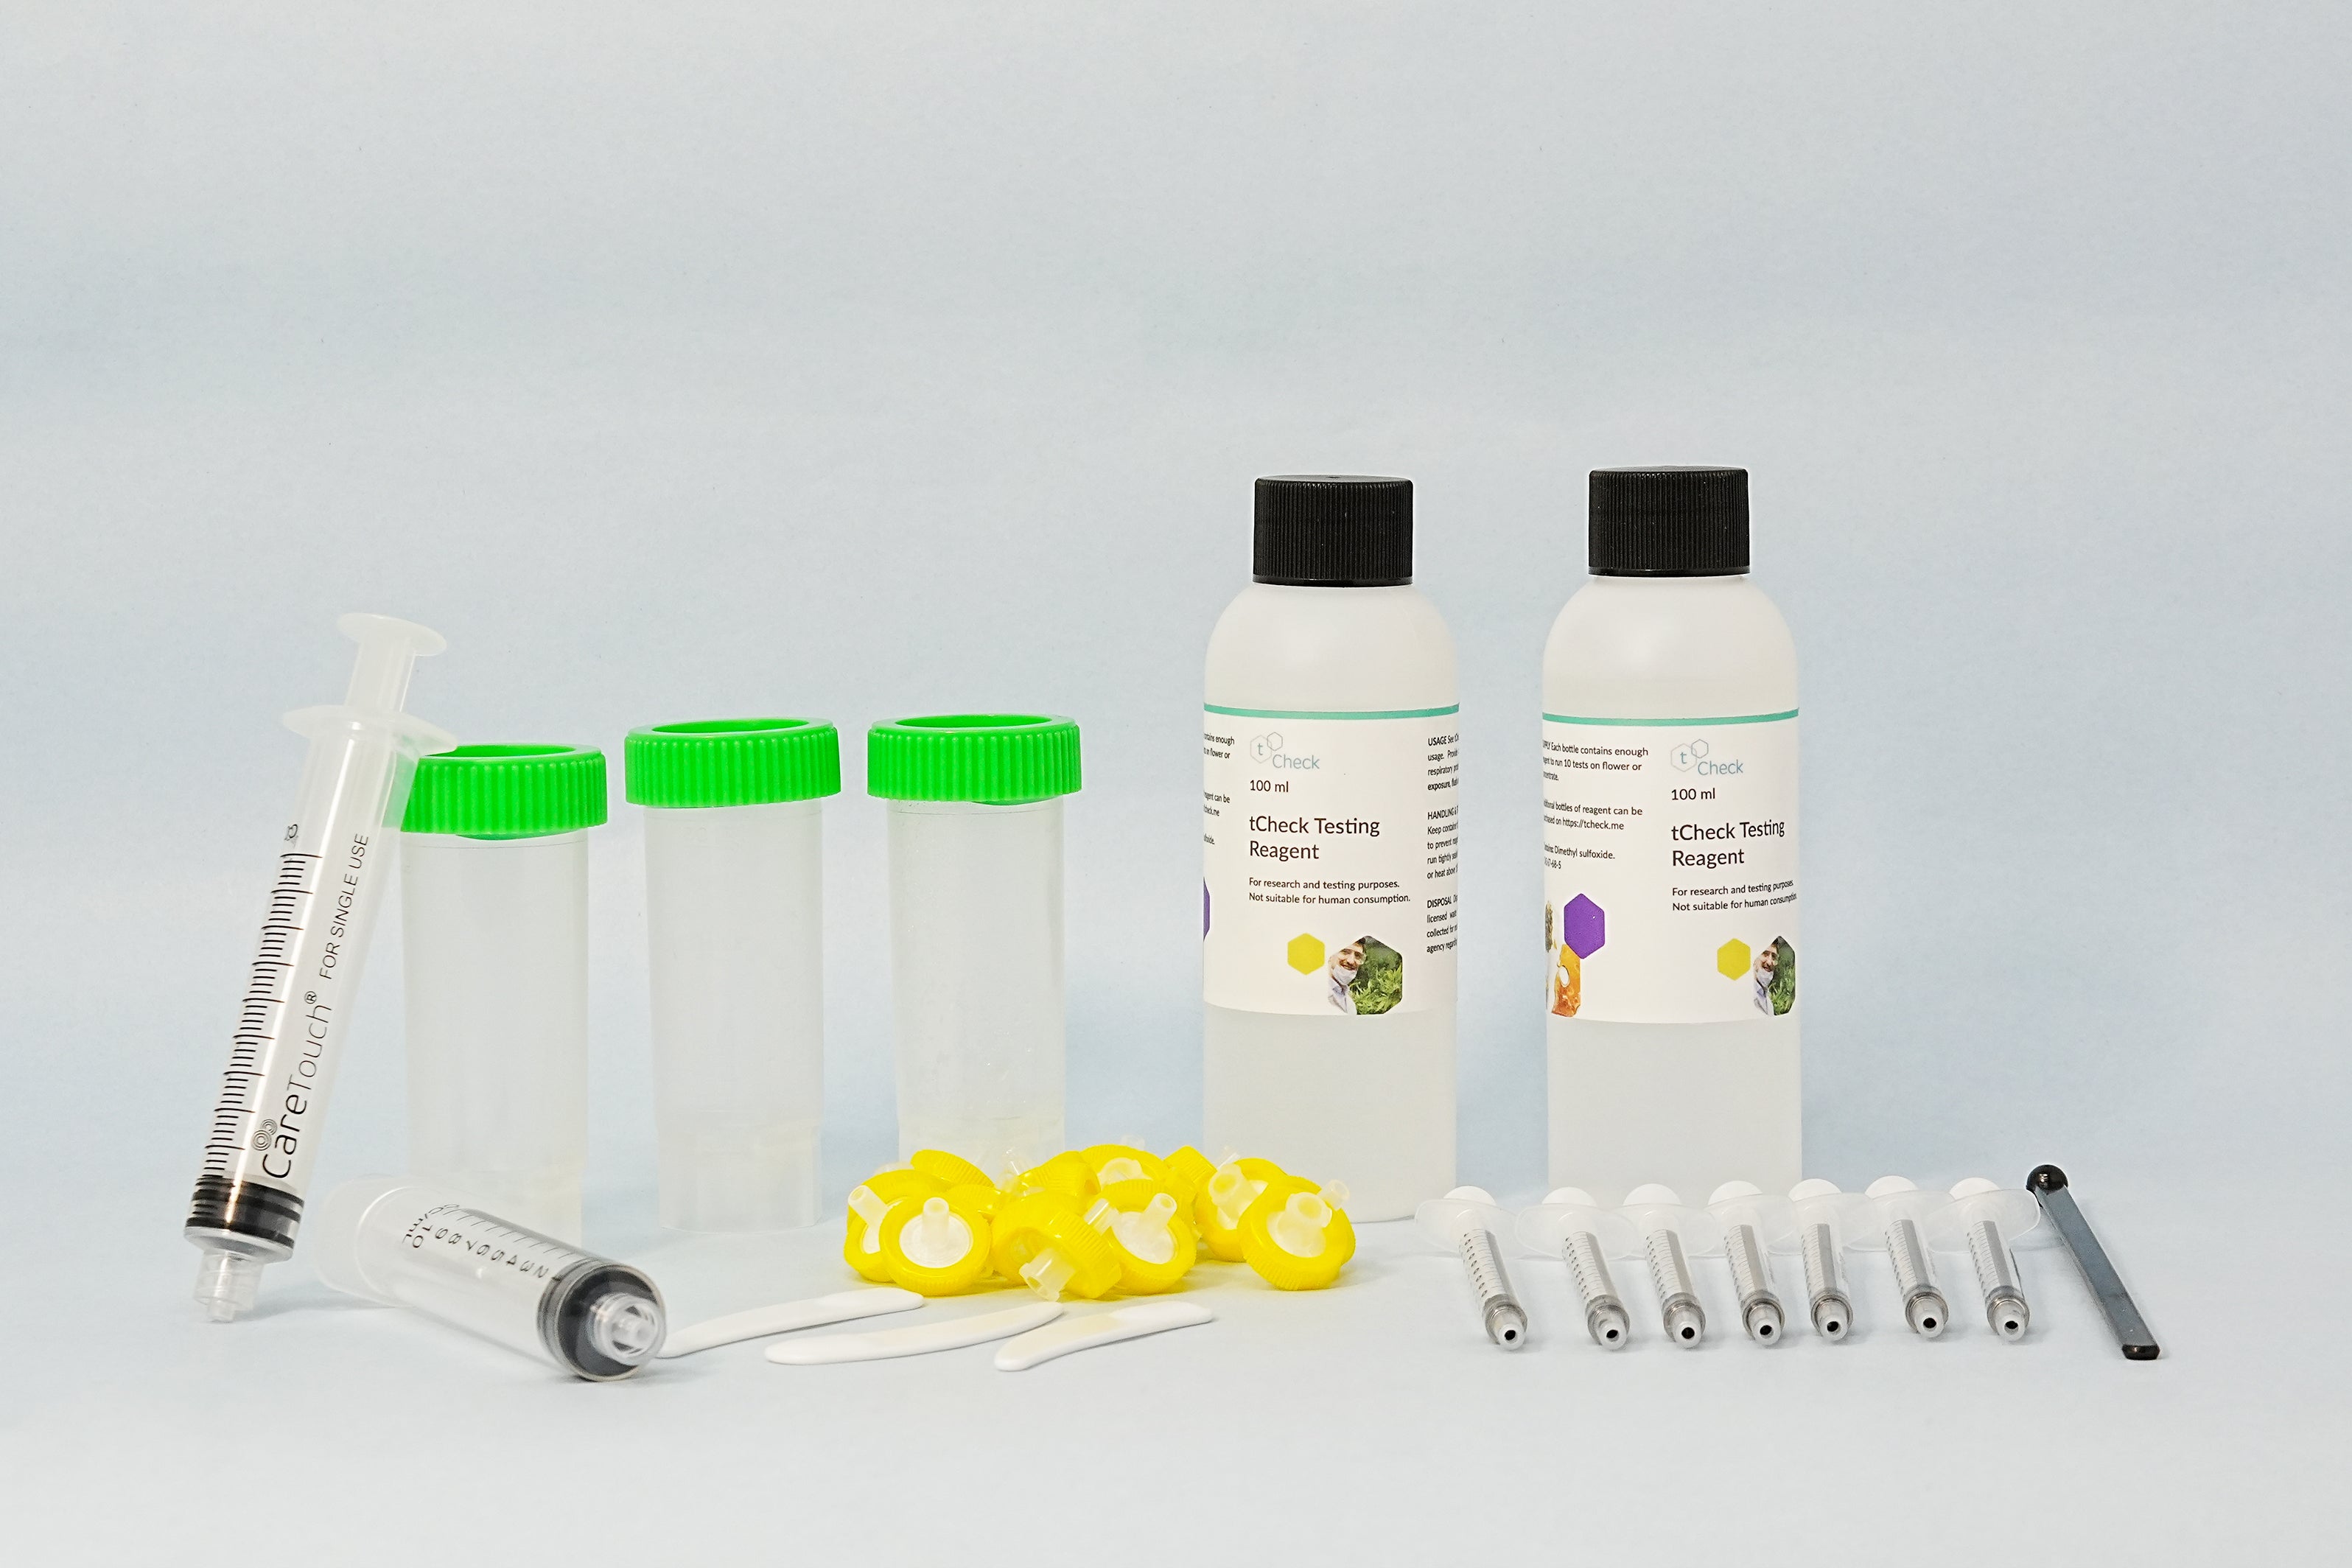 tCheck 3 THC Potency Tester Expansion kit